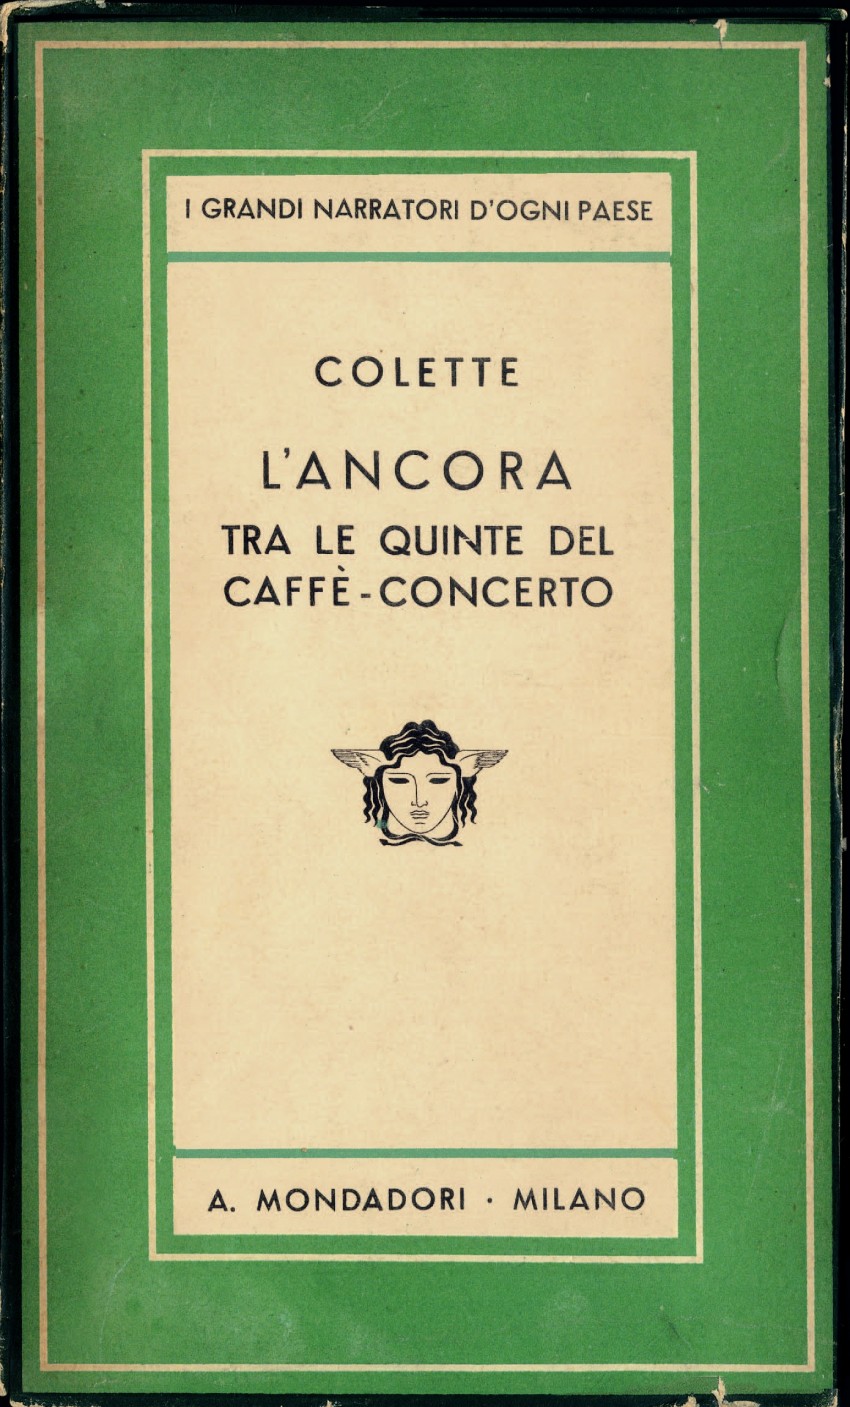 L’ancora - tra le quinte del caffè-concerto di Colette, tra i primi titoli della collana Medusa (1934). - Immagine concessa con licenza CC BY-SA 4.0